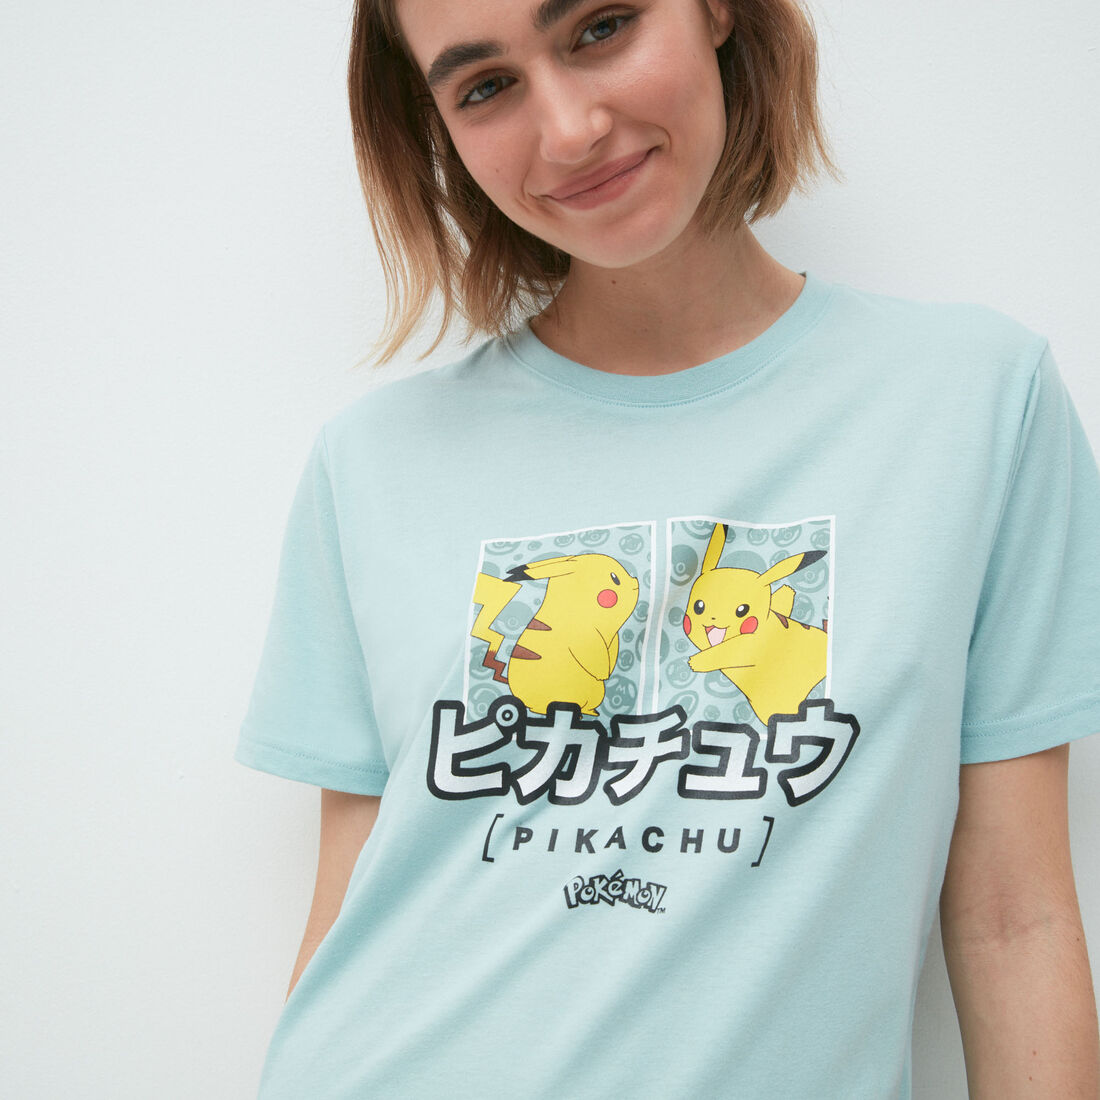 Pikachu printed t-shirt;